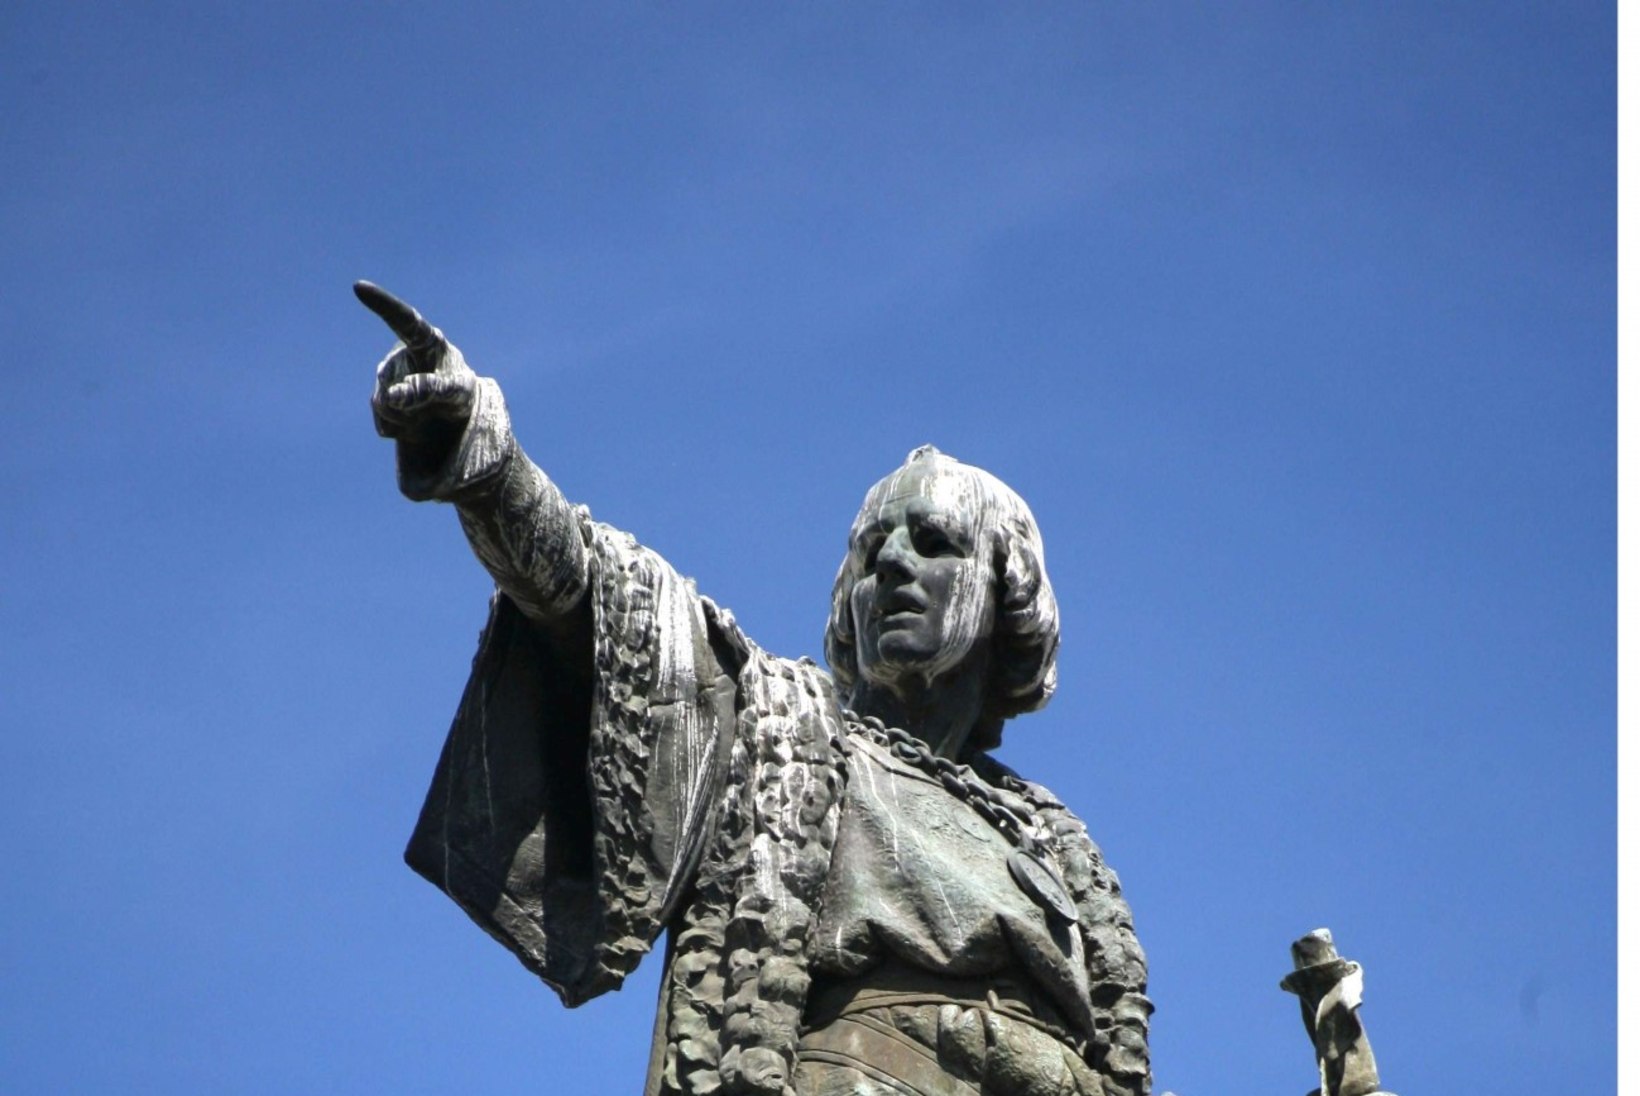 Christoph Kolumbuse vastuoluline lugu